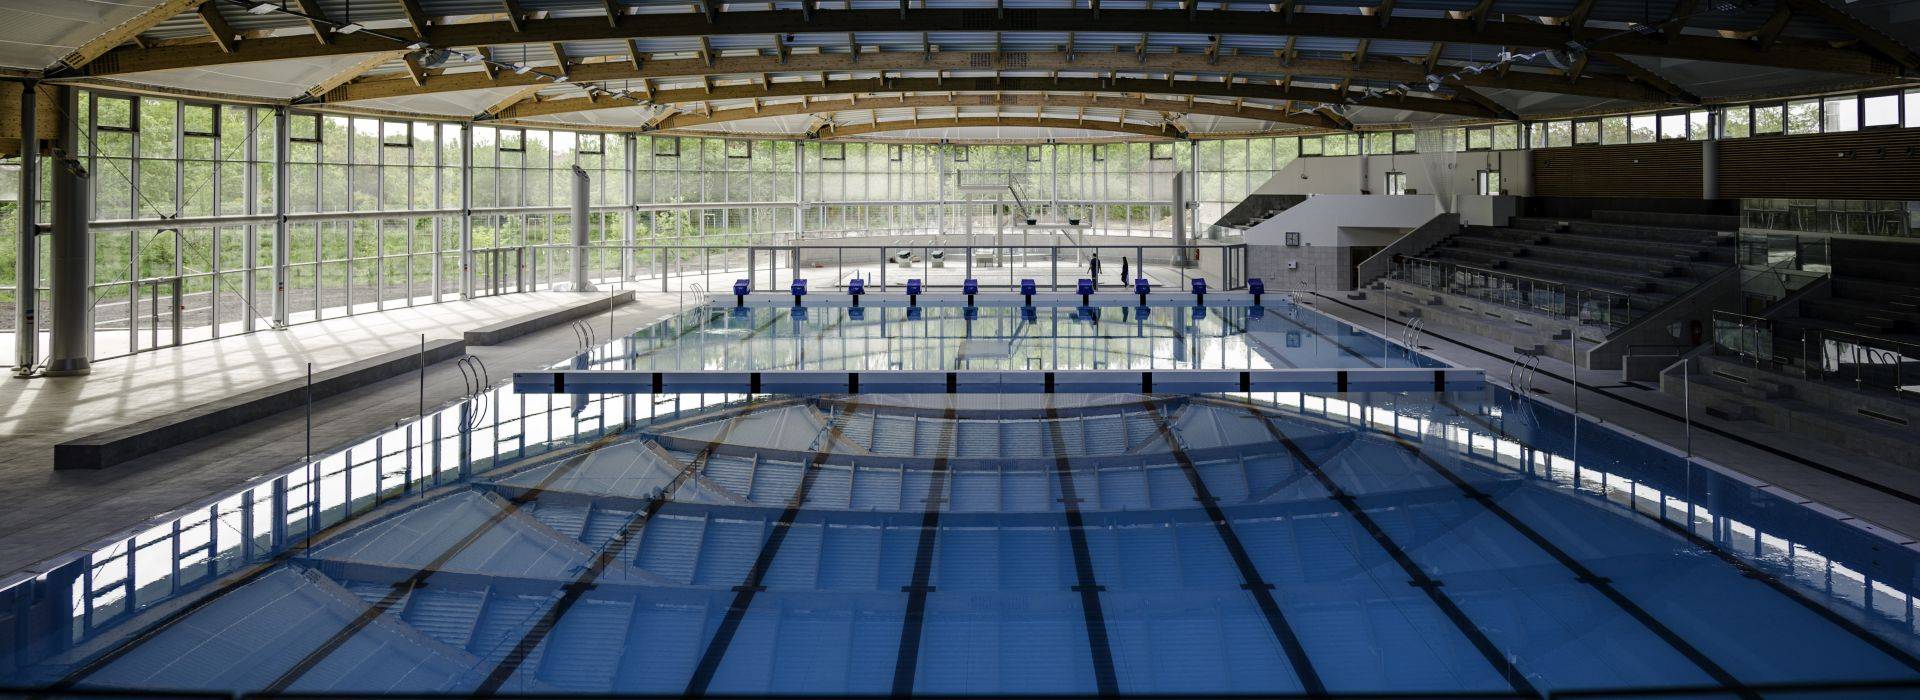 AquaVal bassin sportif